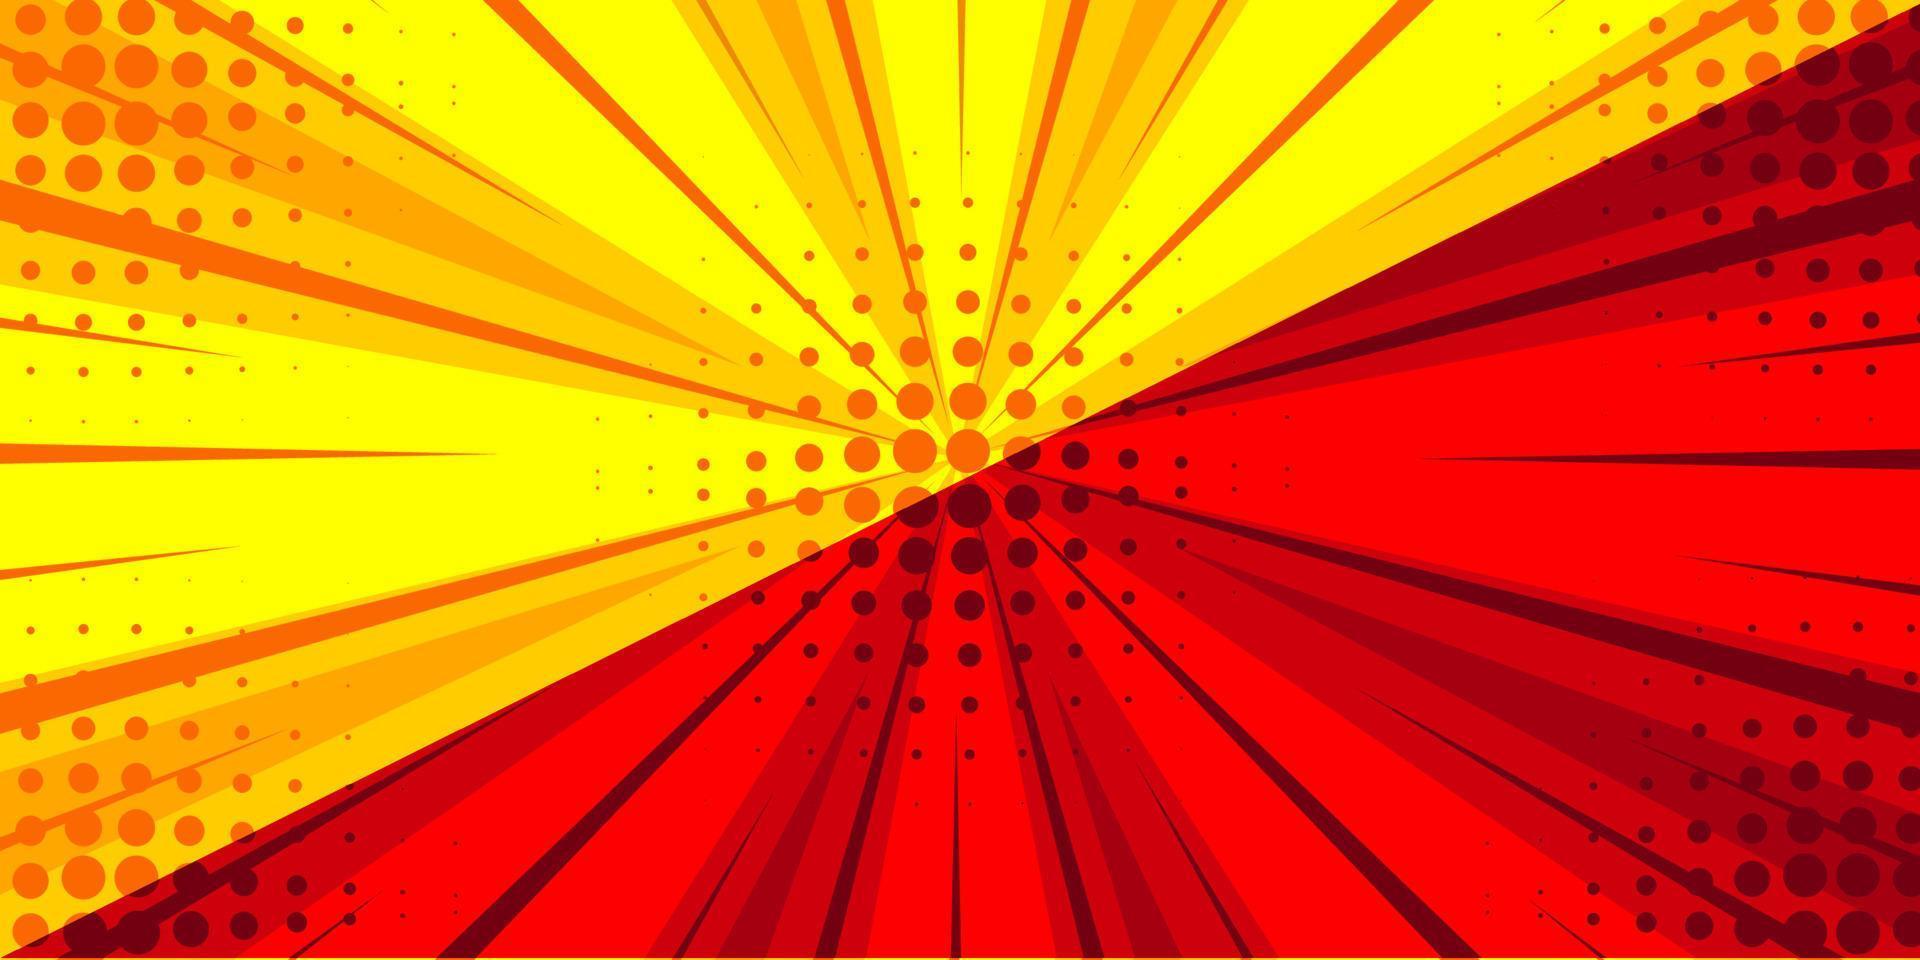 Fondo cómico de rayos de sol rojos y amarillos. fondo de dibujos animados de estilo retro pop art. Ilustración de vector de semitono vintage